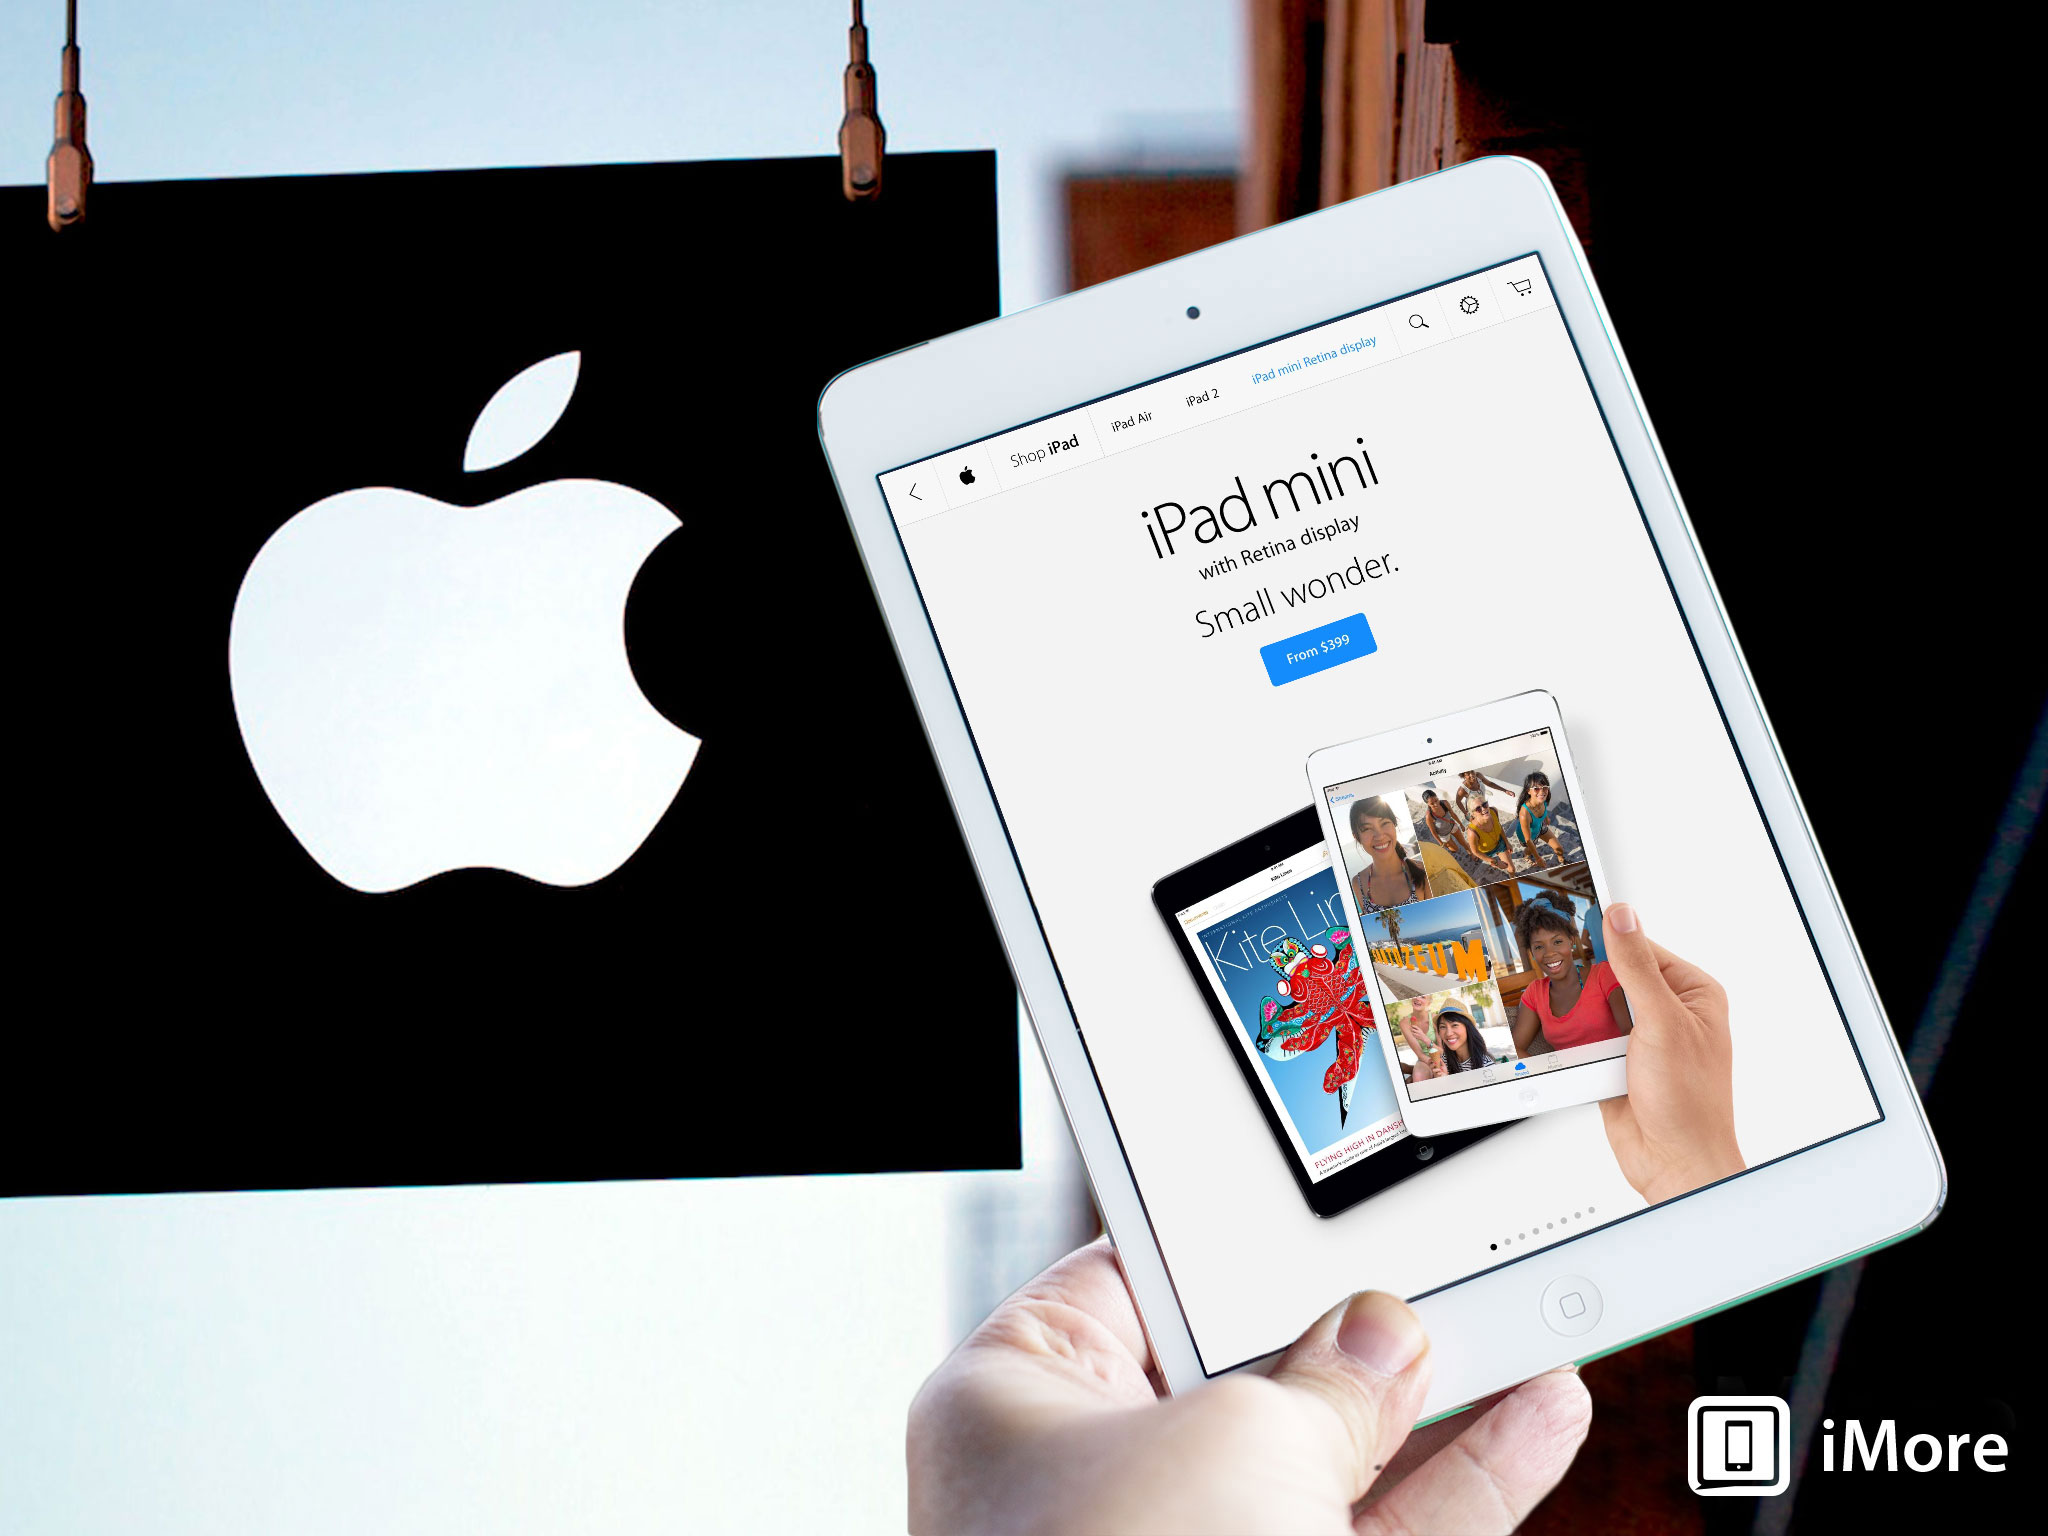 iPad mini 2 buyers guide